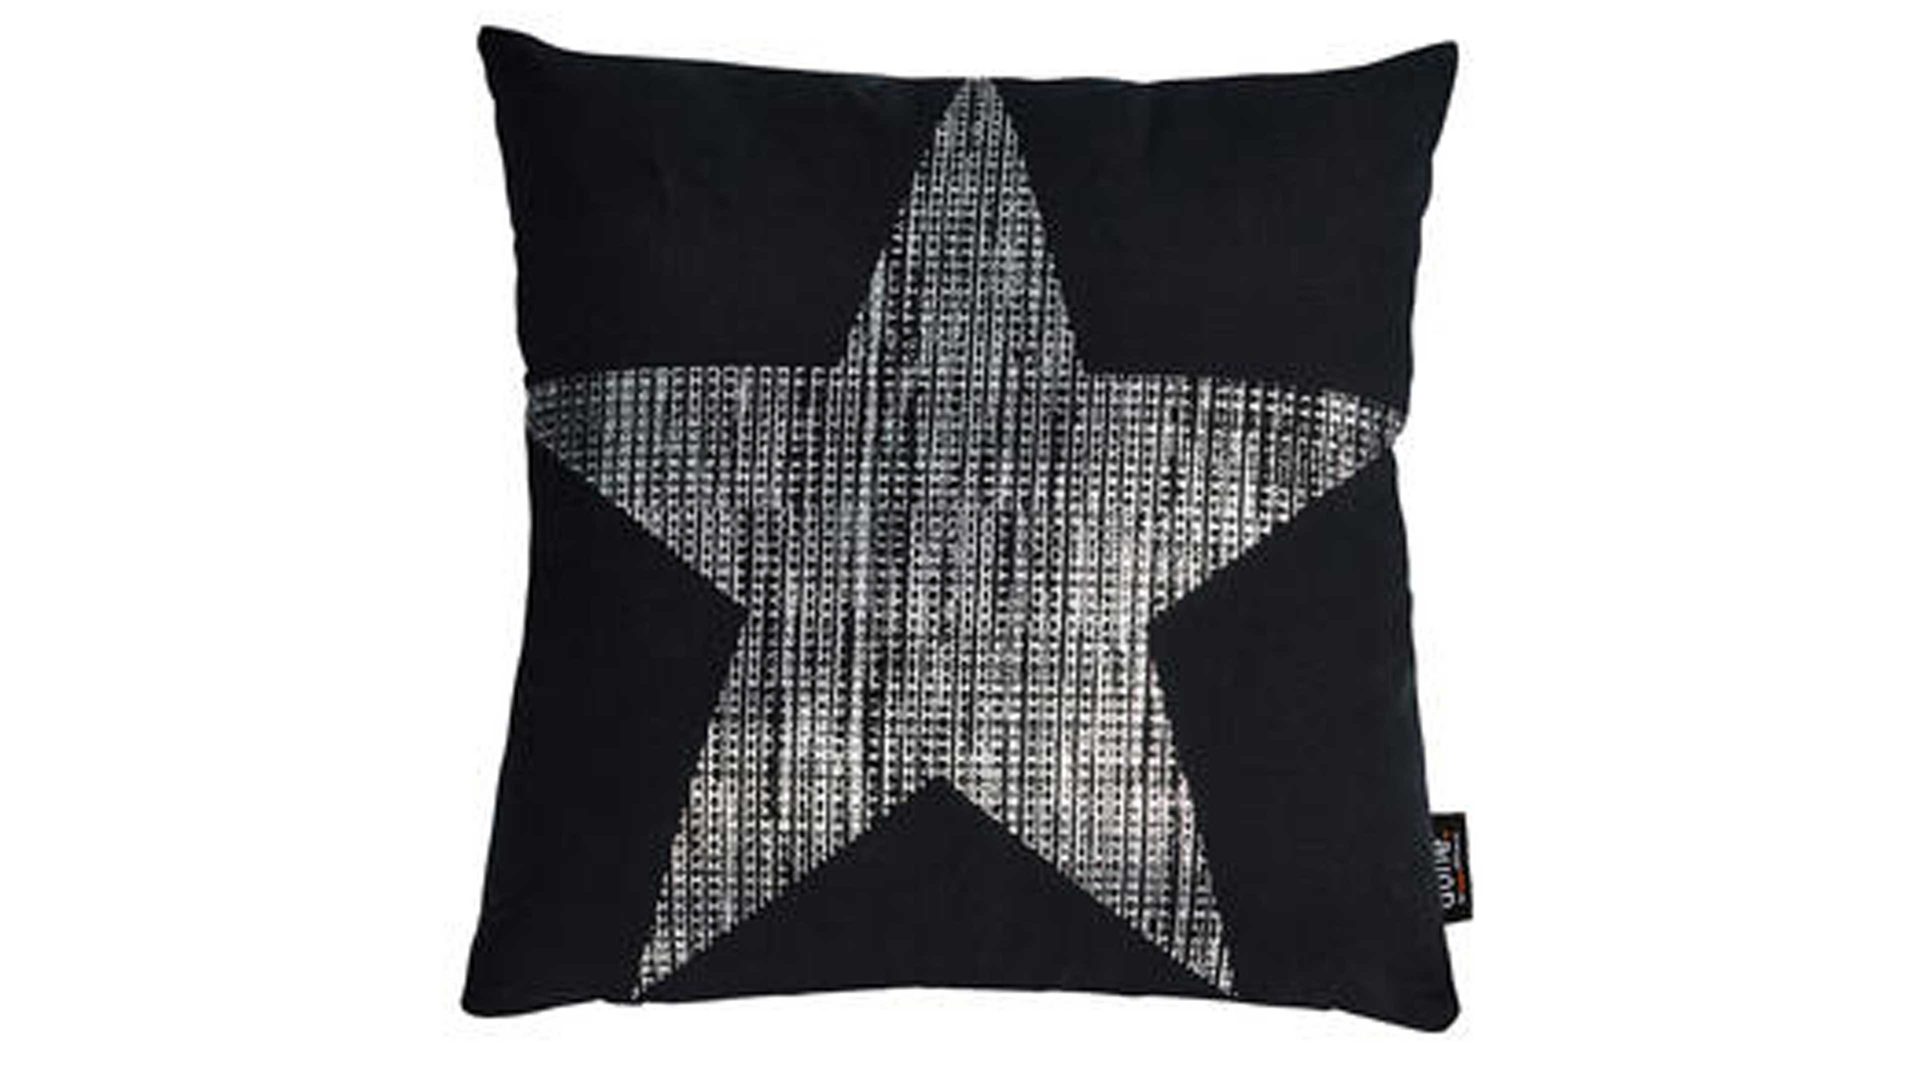 Einzelkissen Done.® aus Baumwolle in Schwarz done.® Kissen Cushion Stone schwarz & Silberdruck Star - ca. 45 x 45 cm